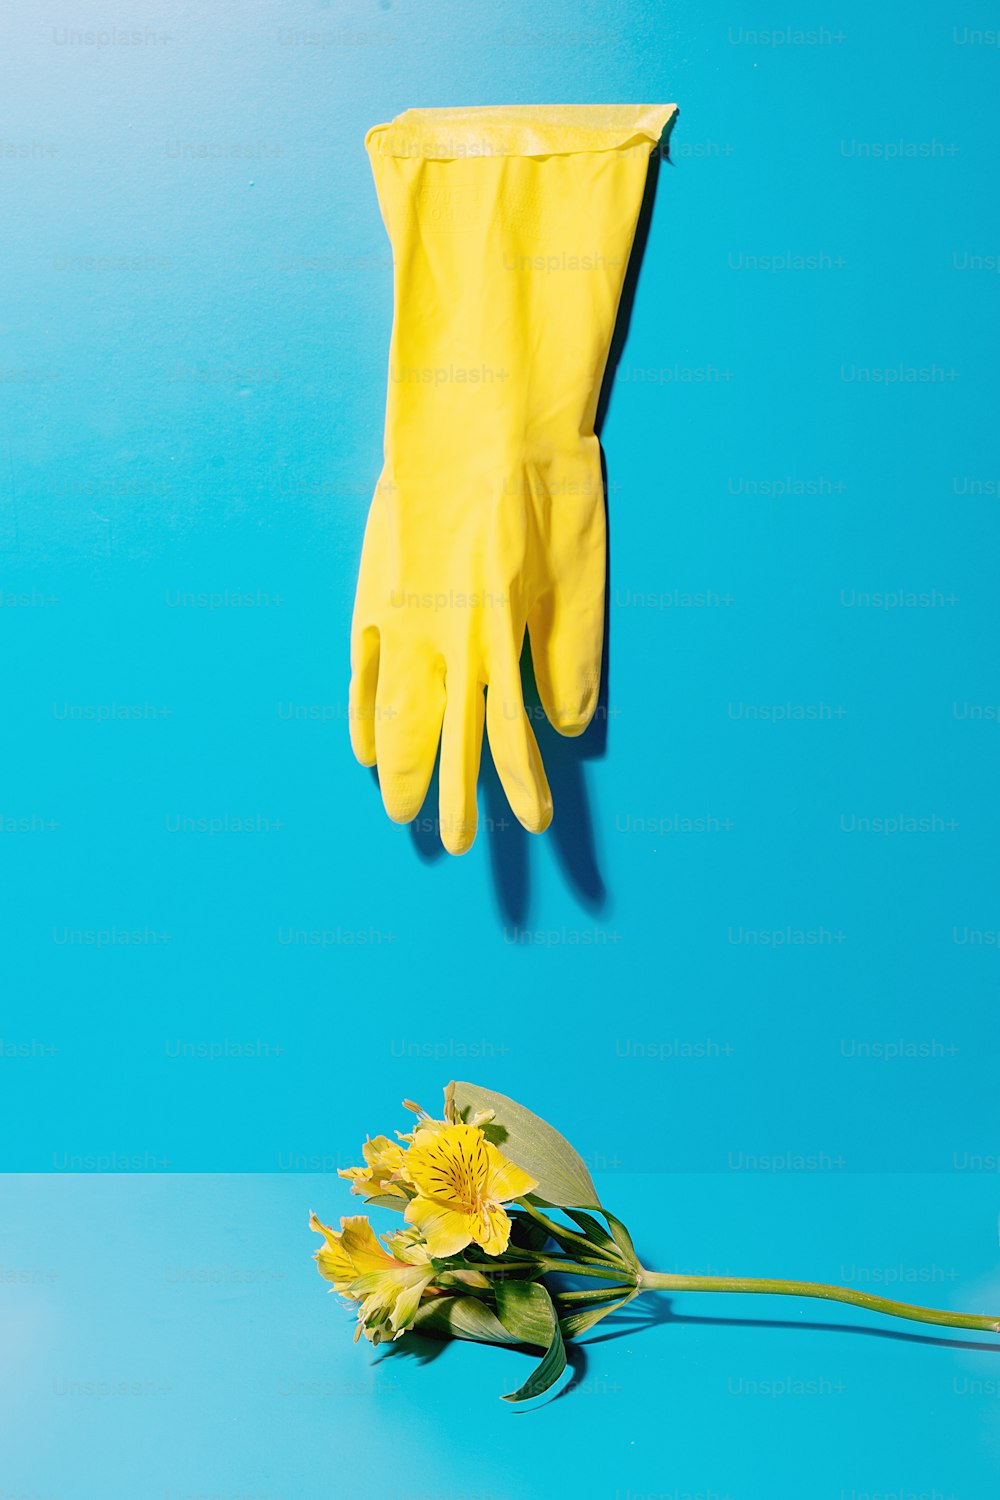 青の背景に黄色い手袋と黄色い花